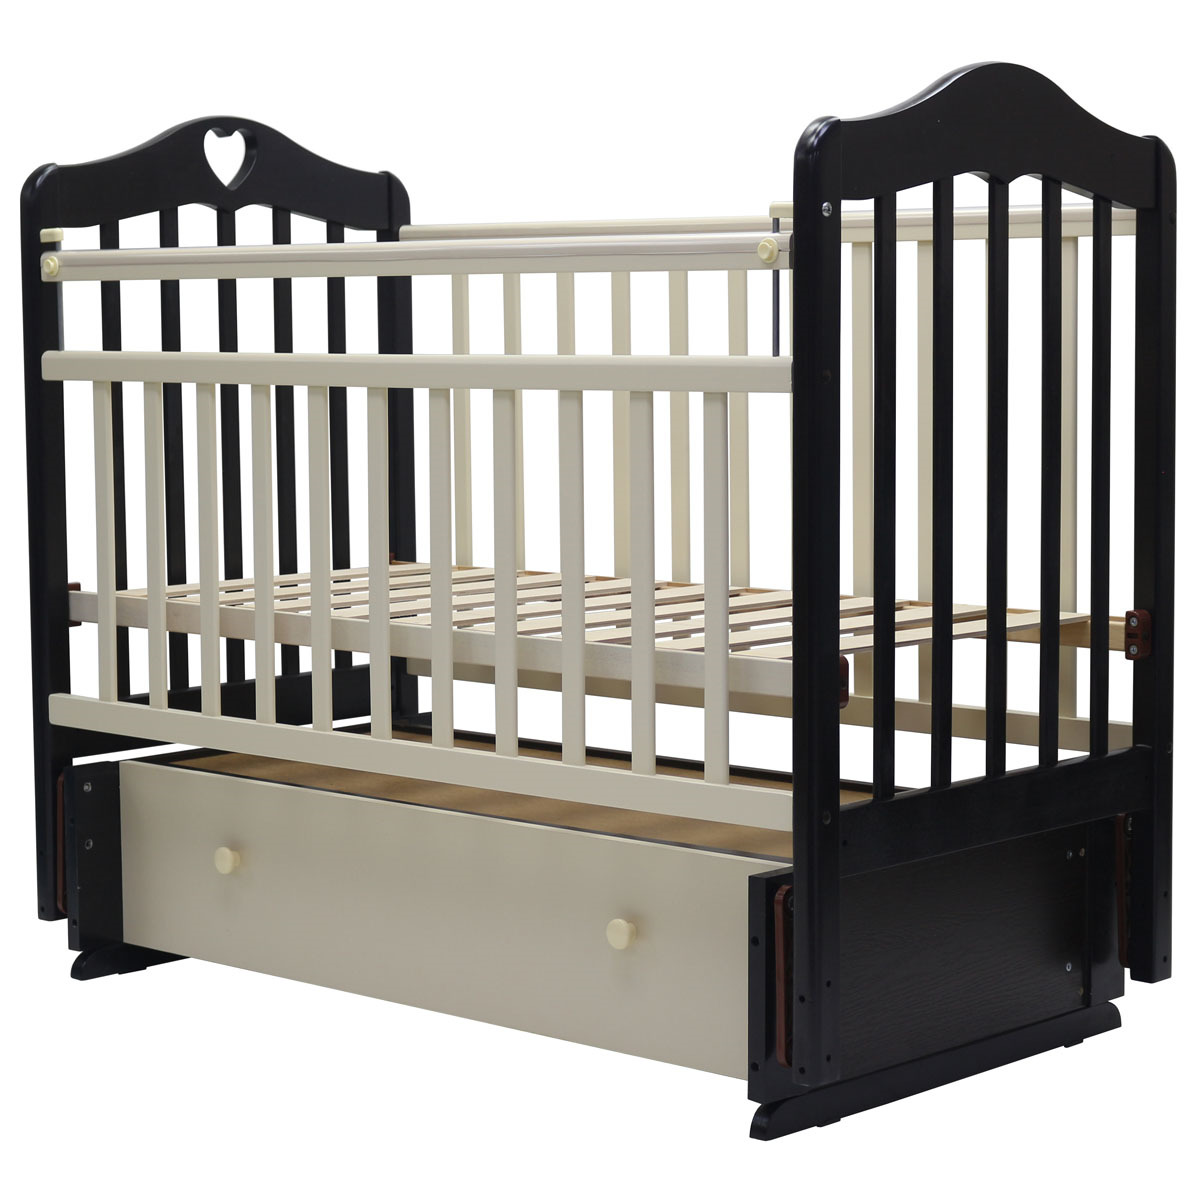 детская кровать маятник для новорожденных